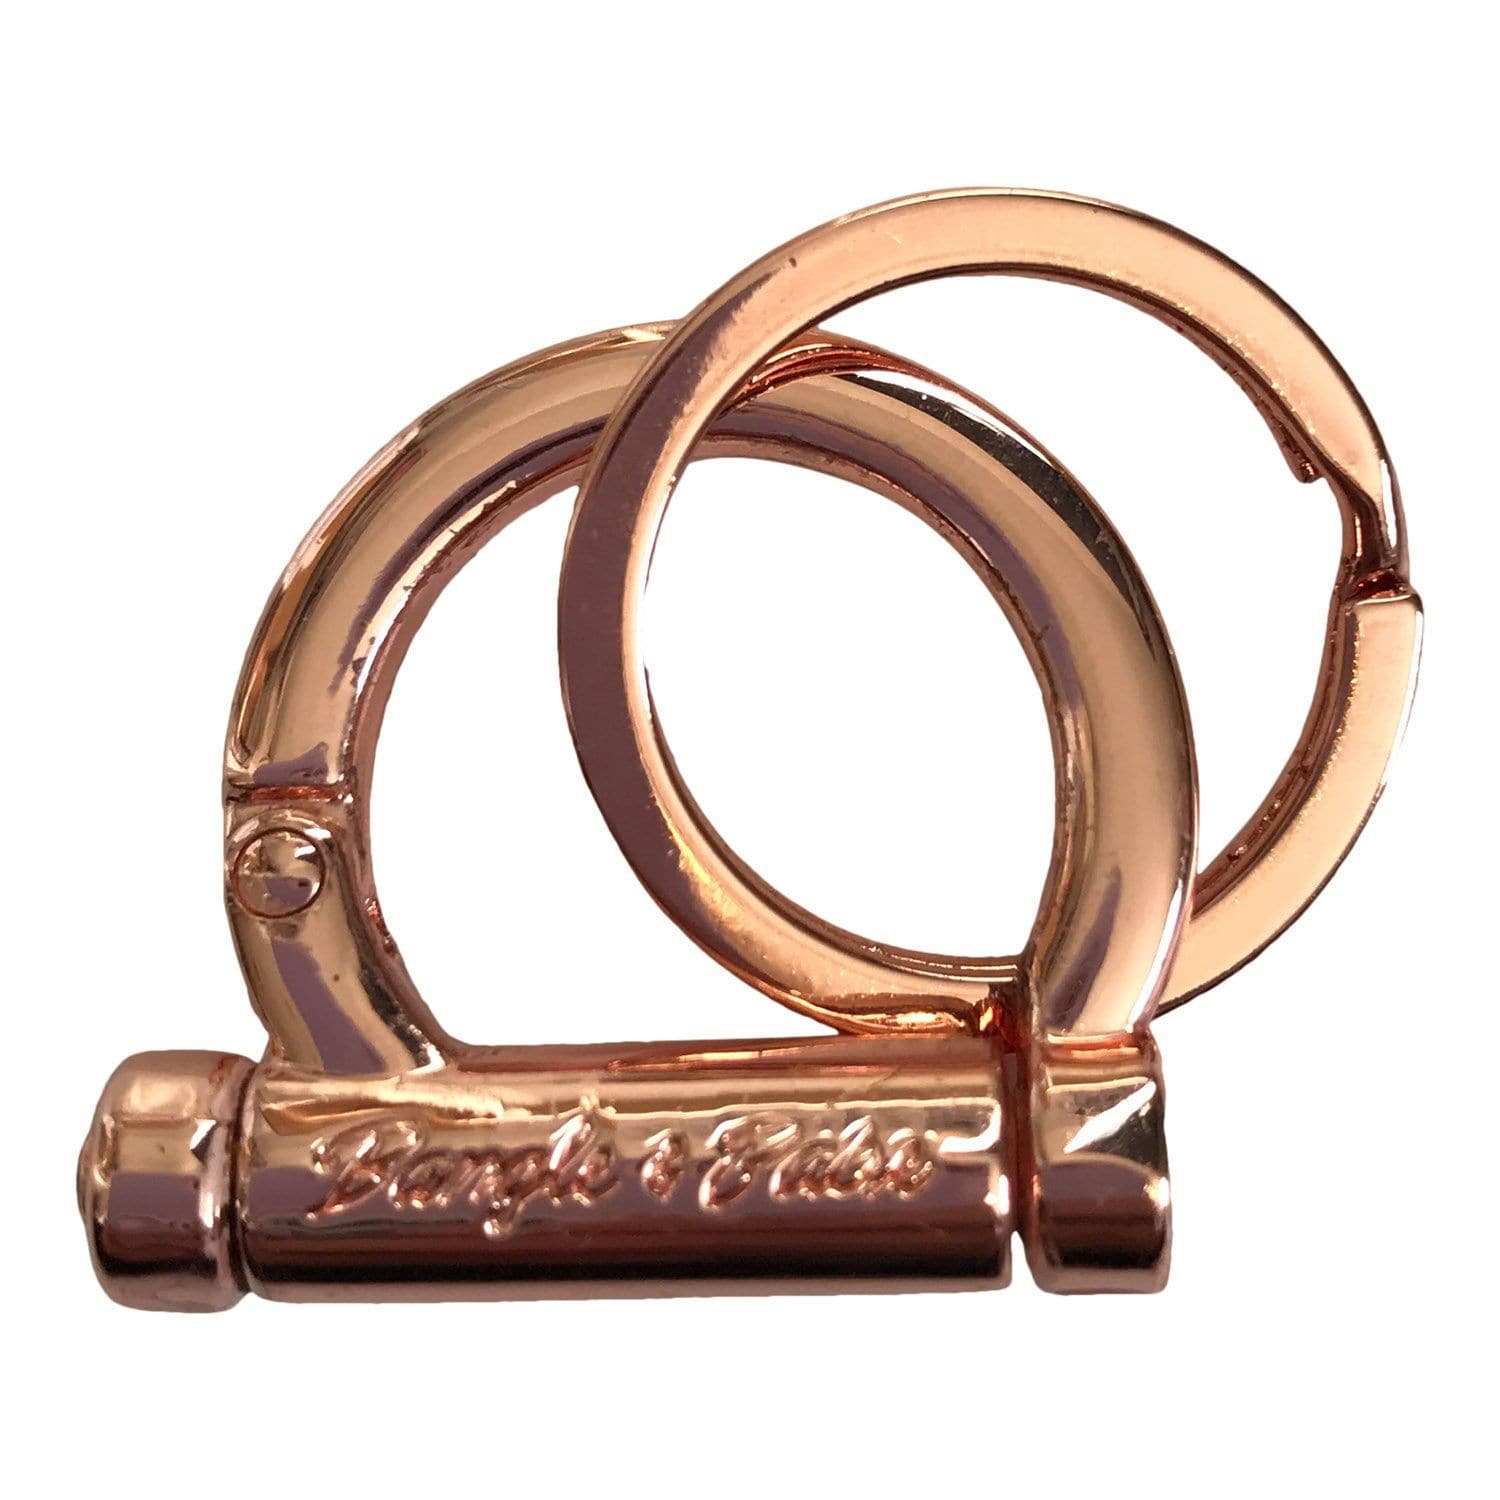 Additional Keychain Clasps - Bangle & Babe Bracelet Key Ring